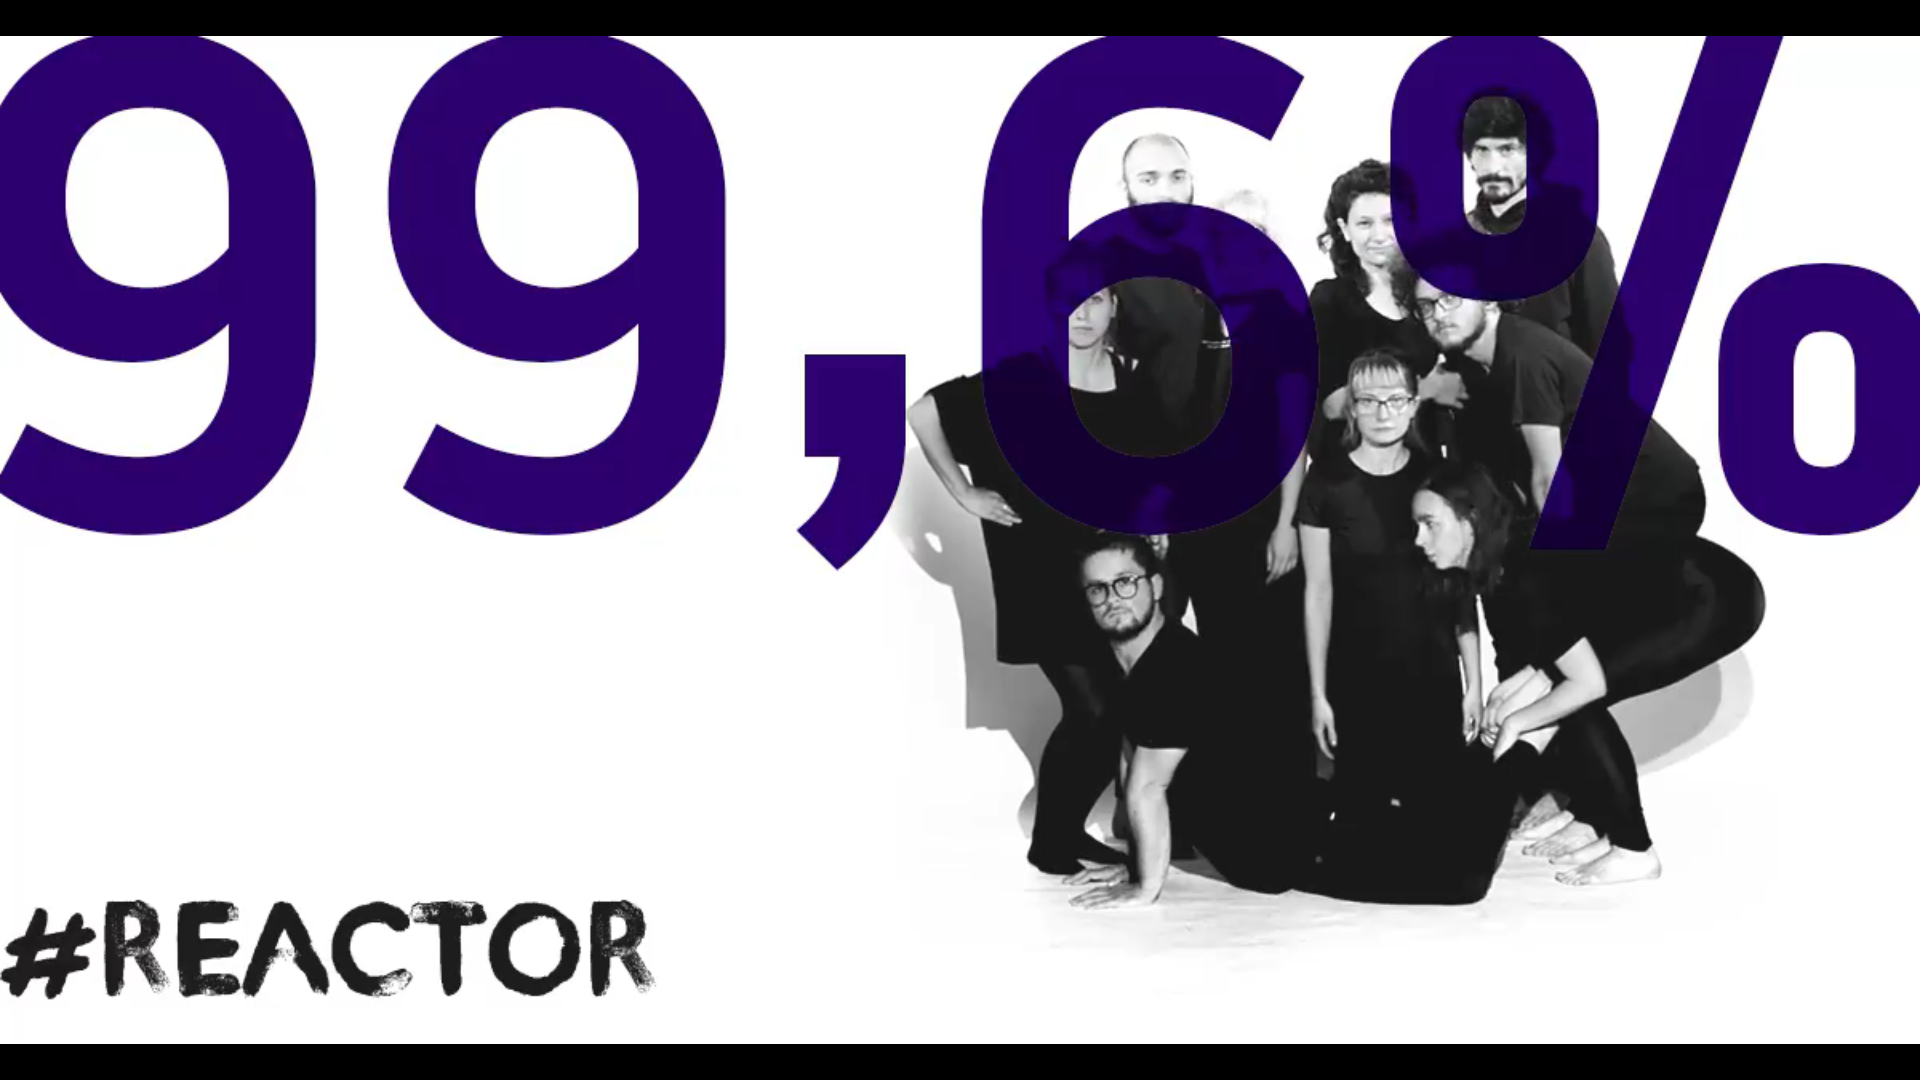 99,6% @ Reactor